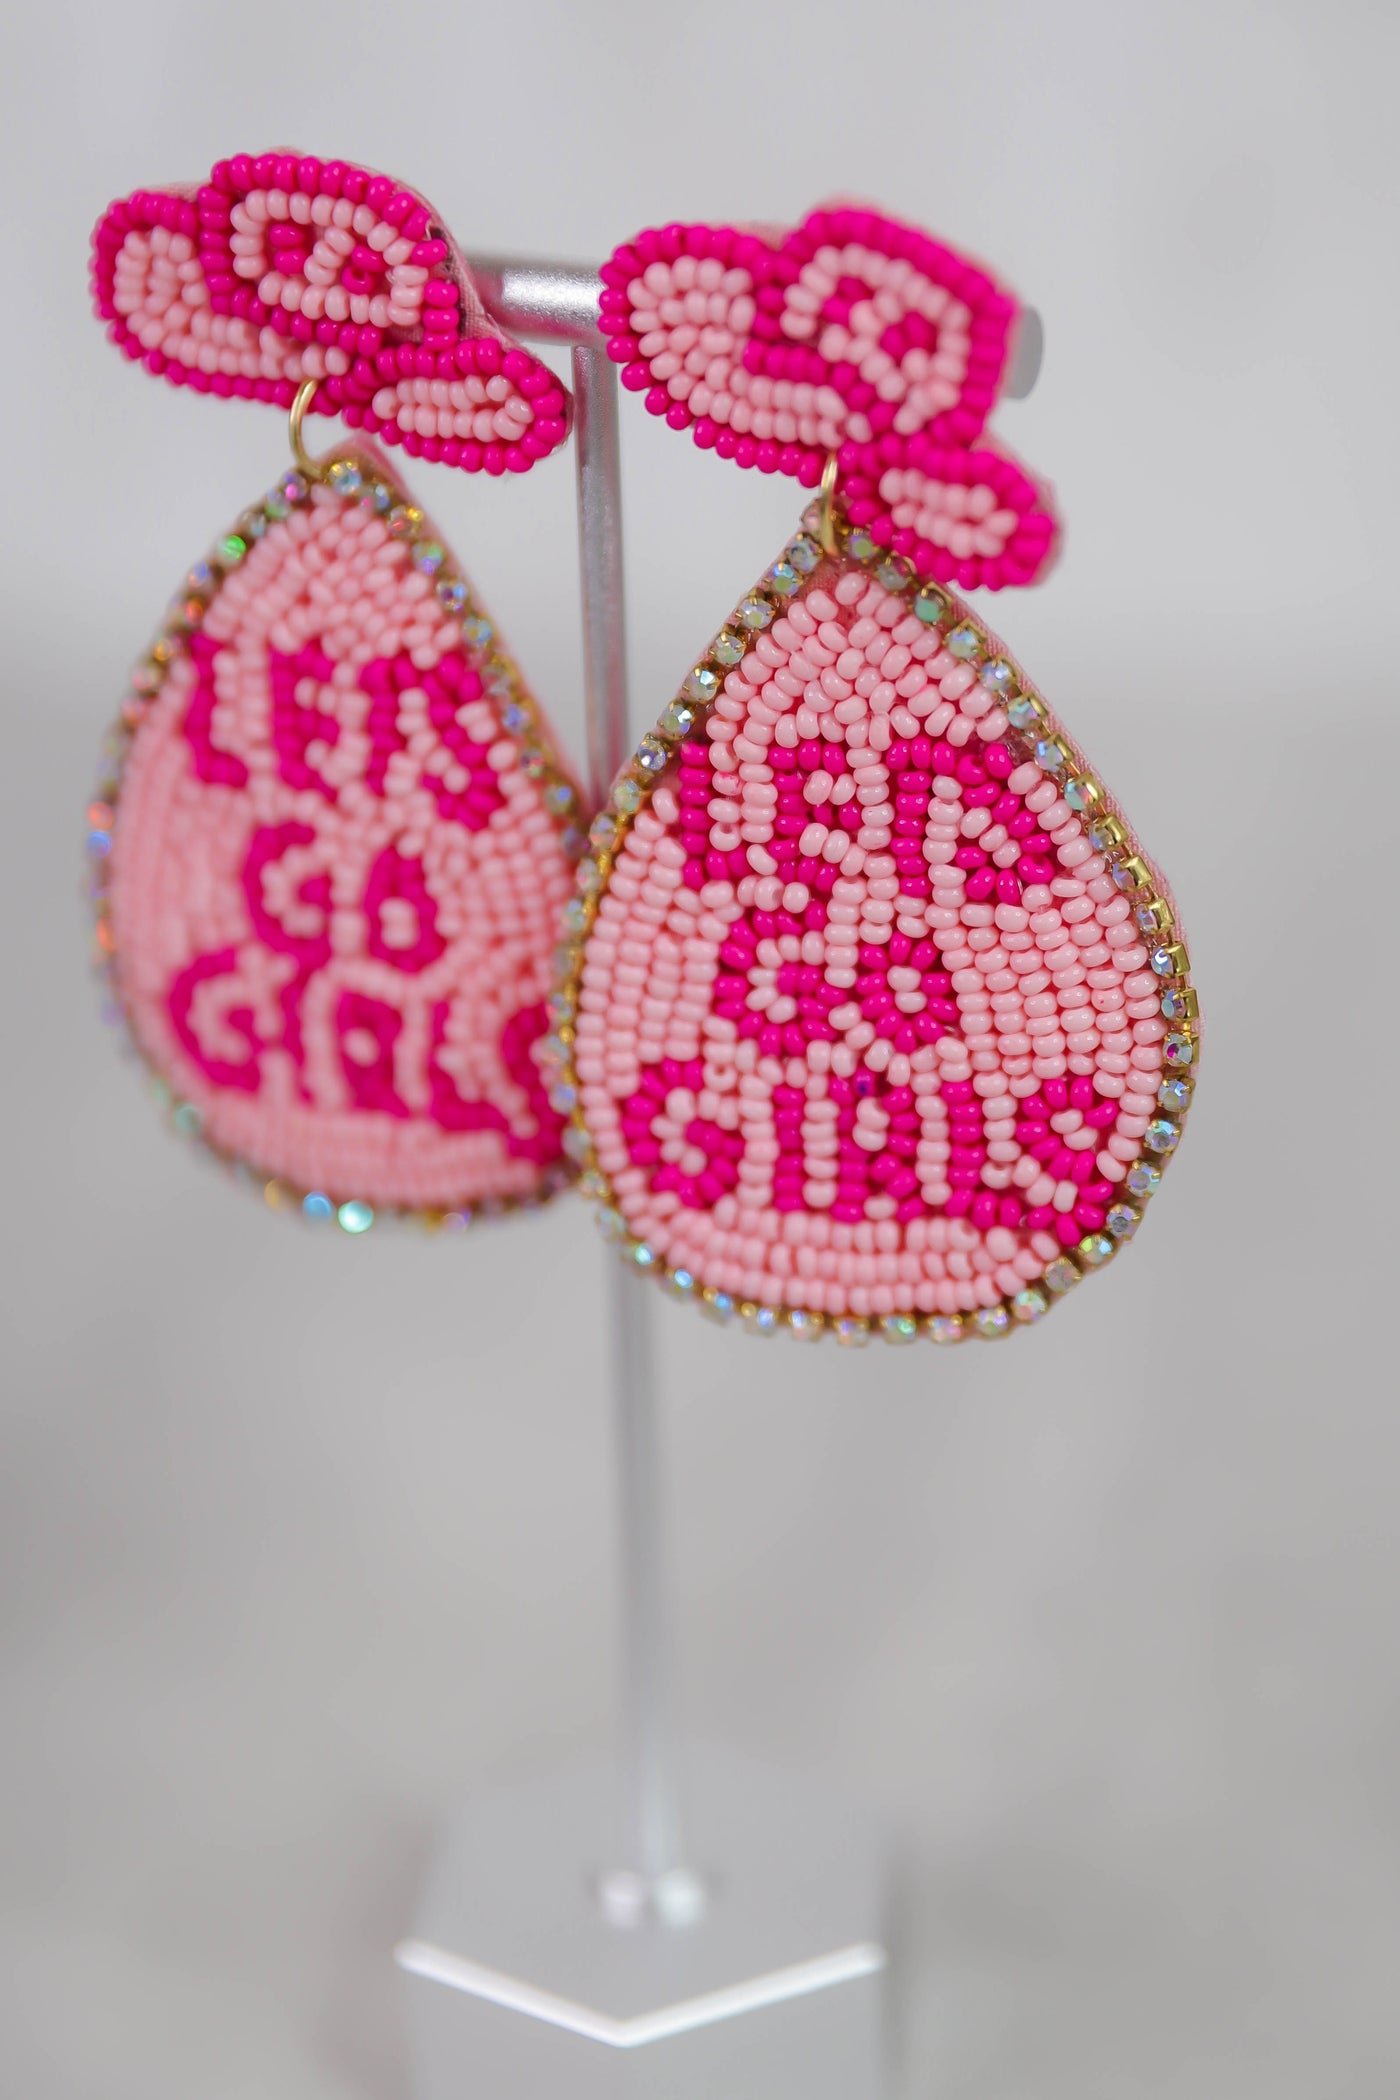 Let's Go Girls Beaded Earrings- Fun Nashville Earrings- Pink Statement Earrings